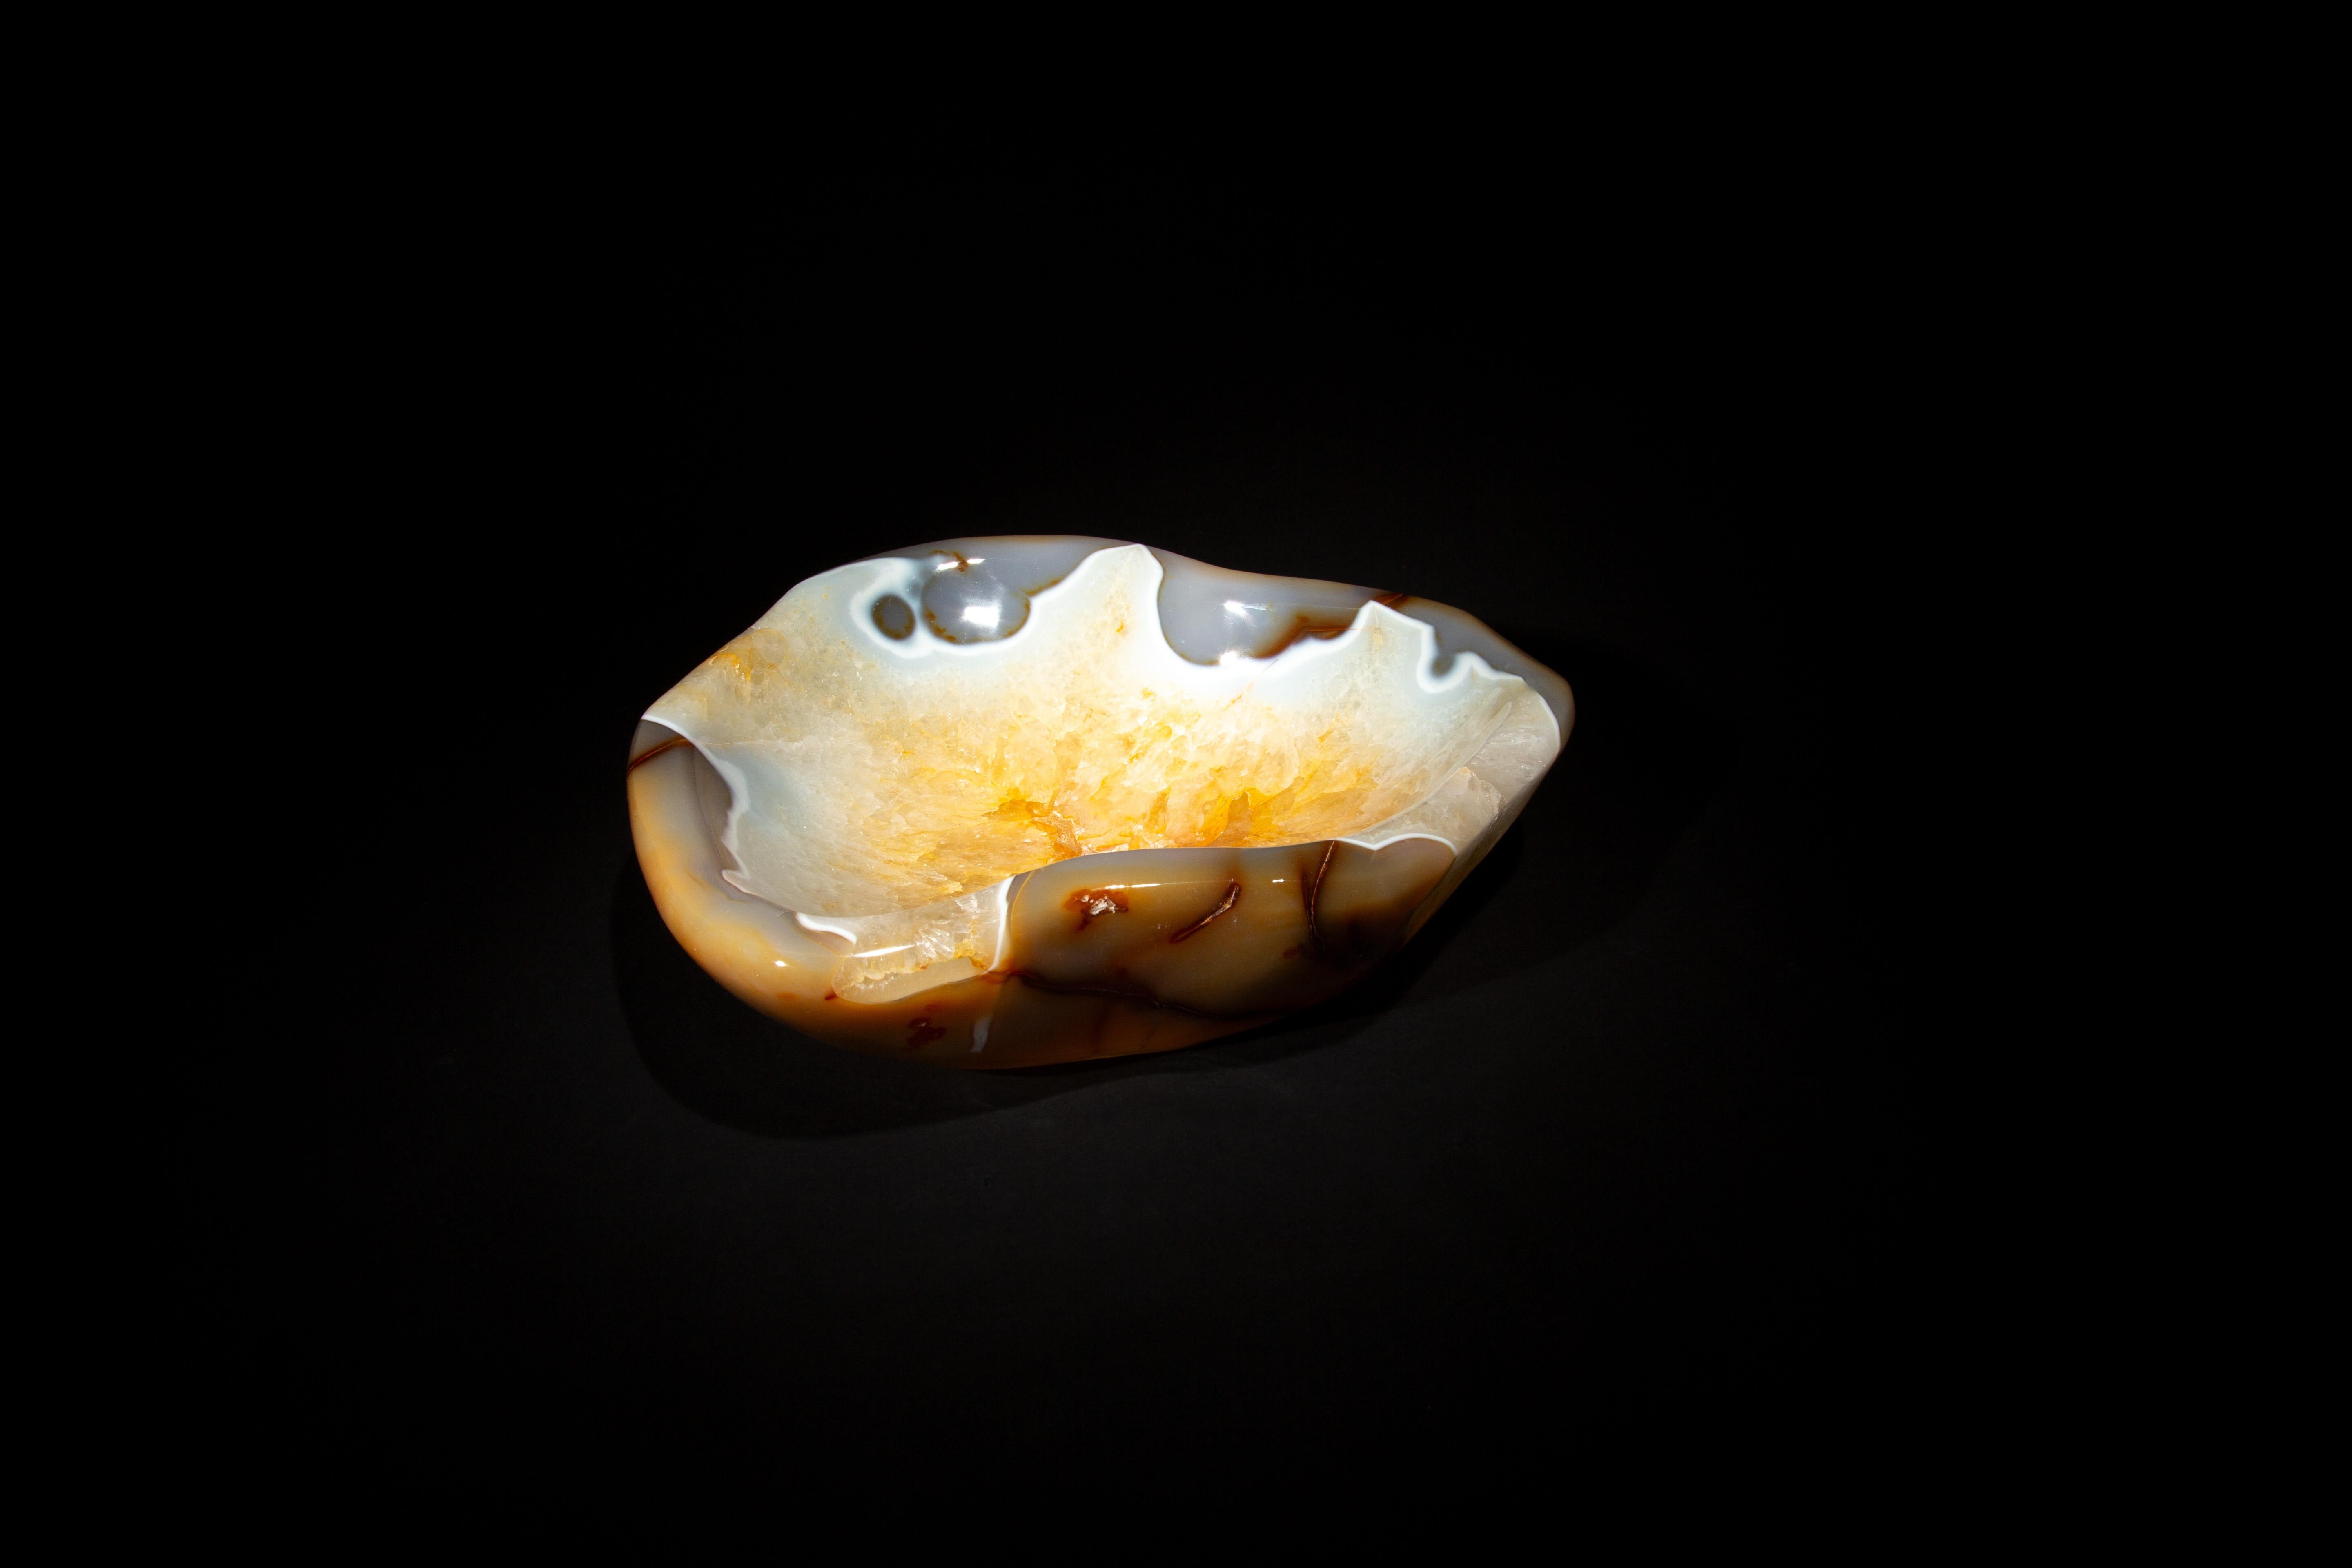 Ce bol en agate et quartz allie la beauté unique des pierres naturelles dans un design élégant. Avec des dimensions de 10,5 pouces par 9 pouces et une profondeur de 2,5 pouces, il présente un mélange harmonieux de bandes d'agate frappantes et d'un